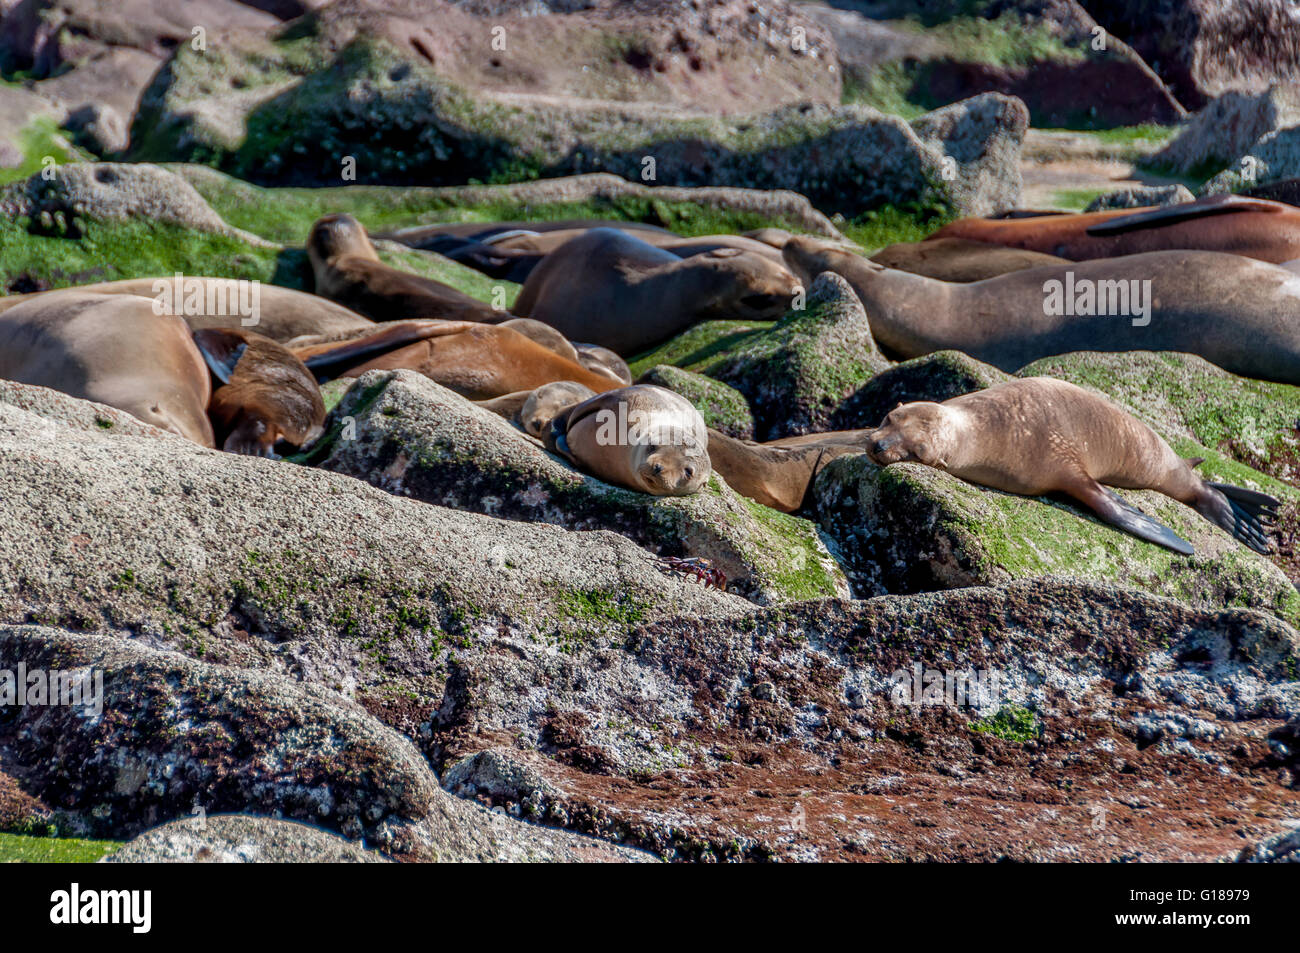 California lobos marinos descansando en Los Islotes, Isla Espiritu Santo, en el Mar de Cortez / Cortes cerca de la Paz, Baja California Sur, México. Foto de stock